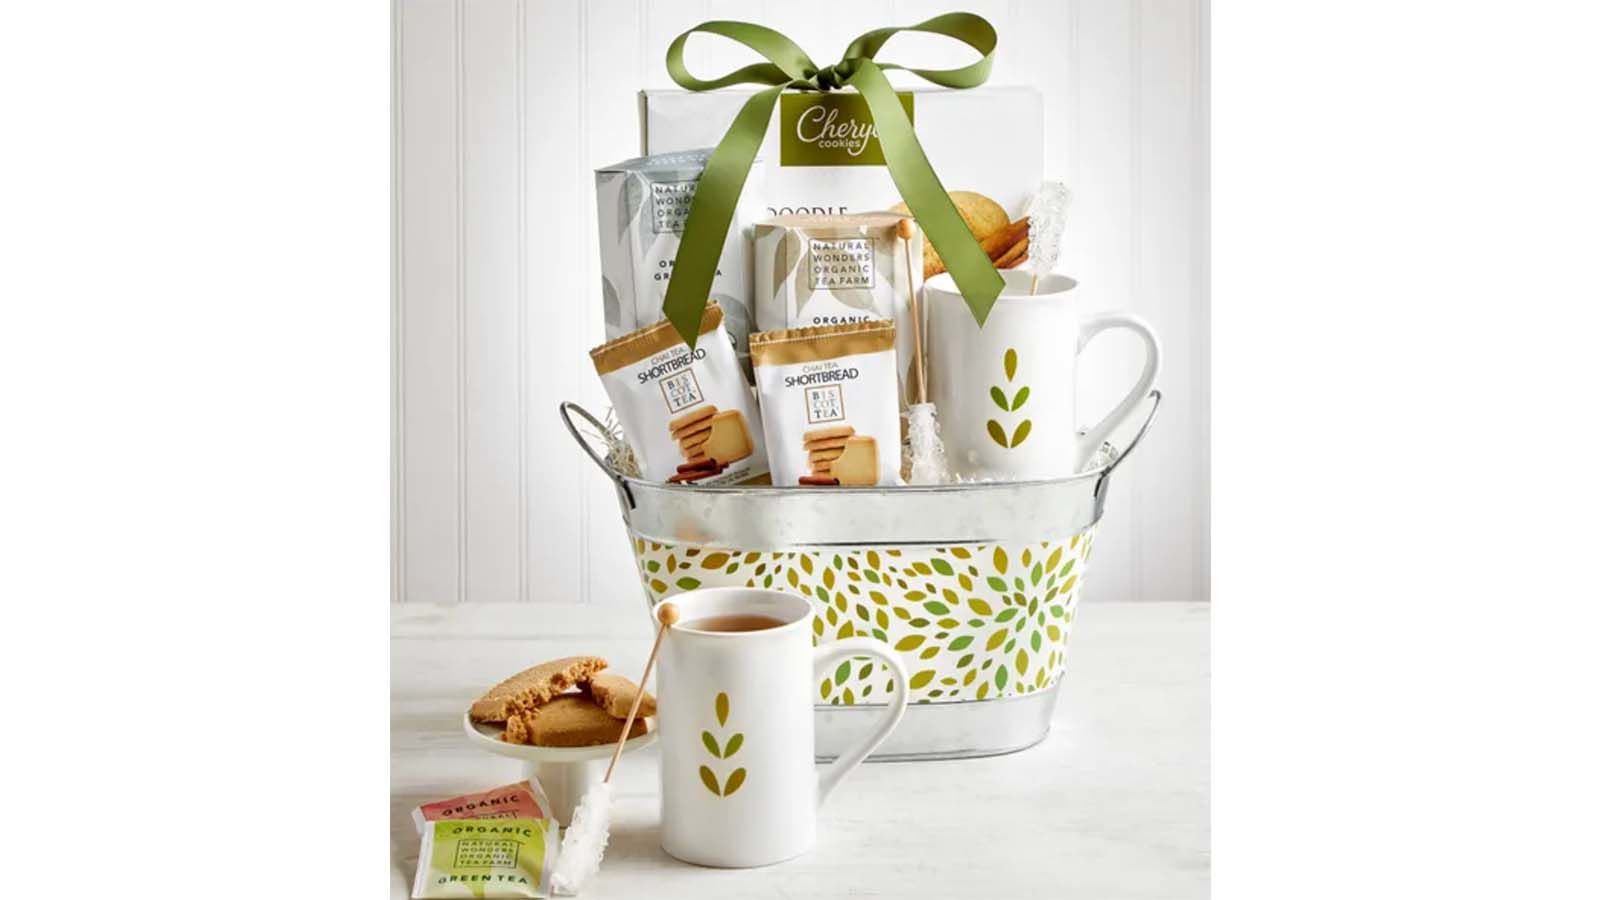 Gift baskets for women / Women's Gift Basket / Spa Gift Basket for Her /  Caramel Indulgence Spa Relaxation Hamper / Gift Basket for Birthday